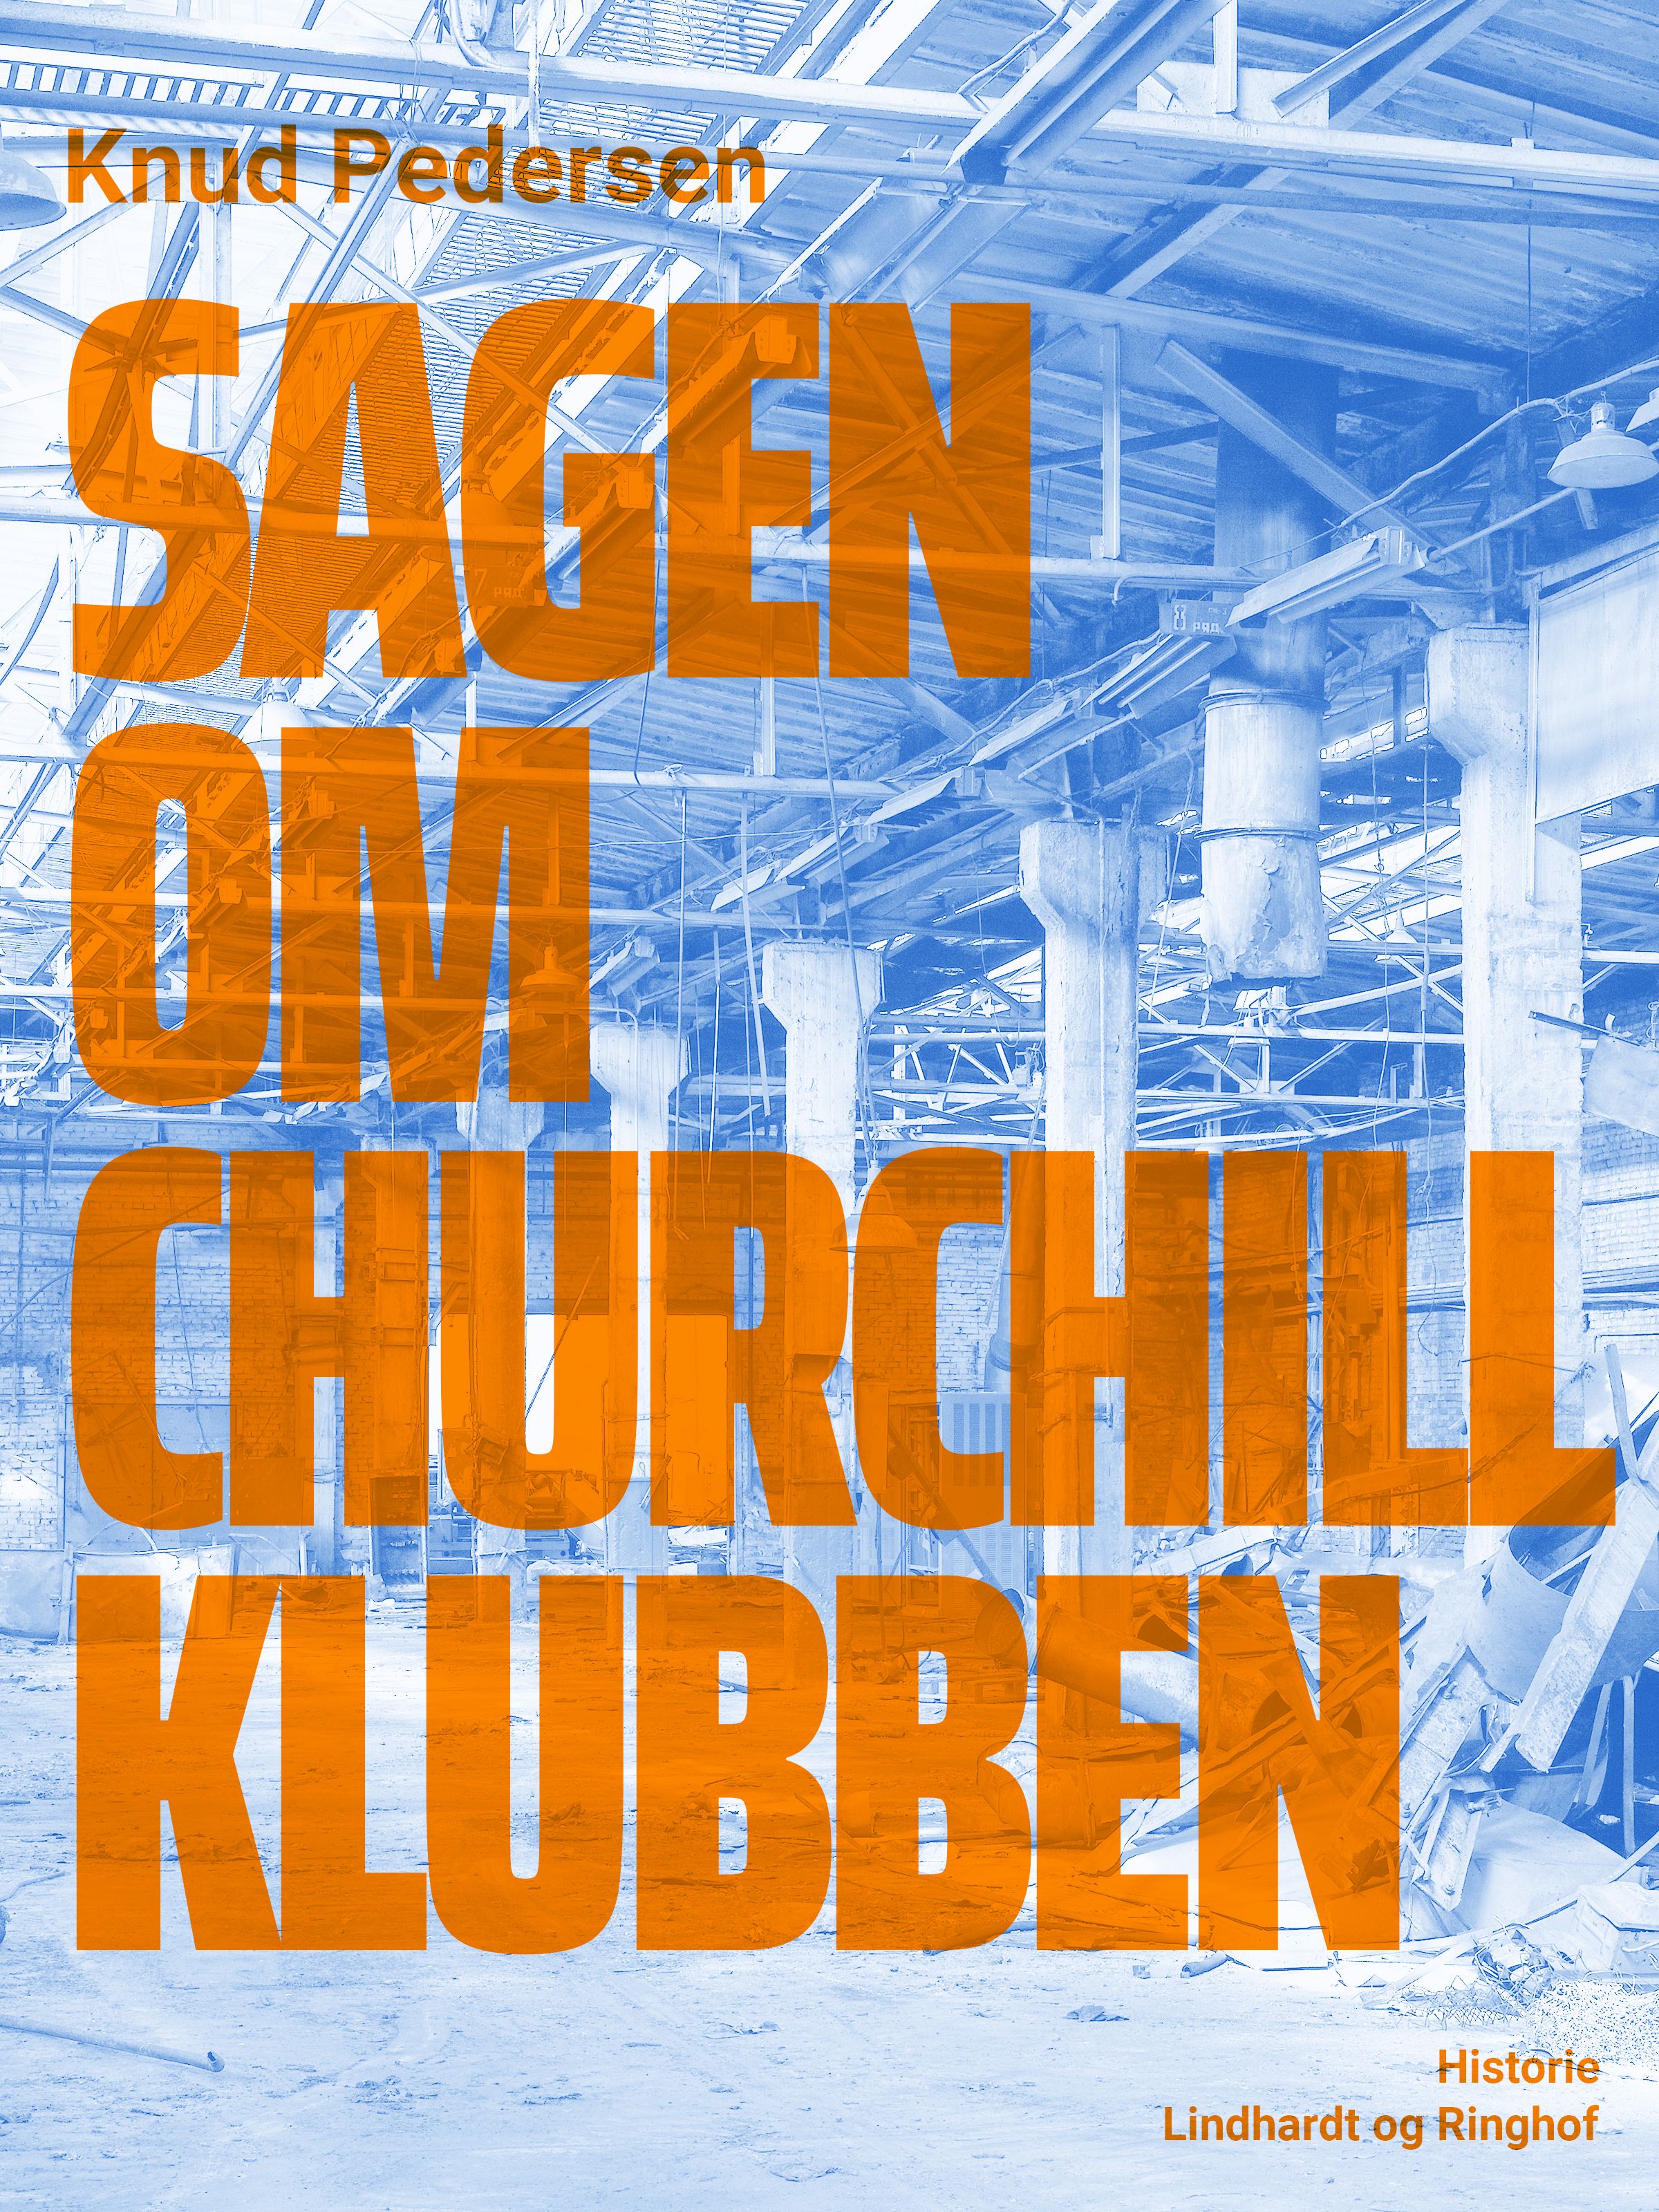 Sagen om Churchill Klubben, e-bog af Knud Pedersen